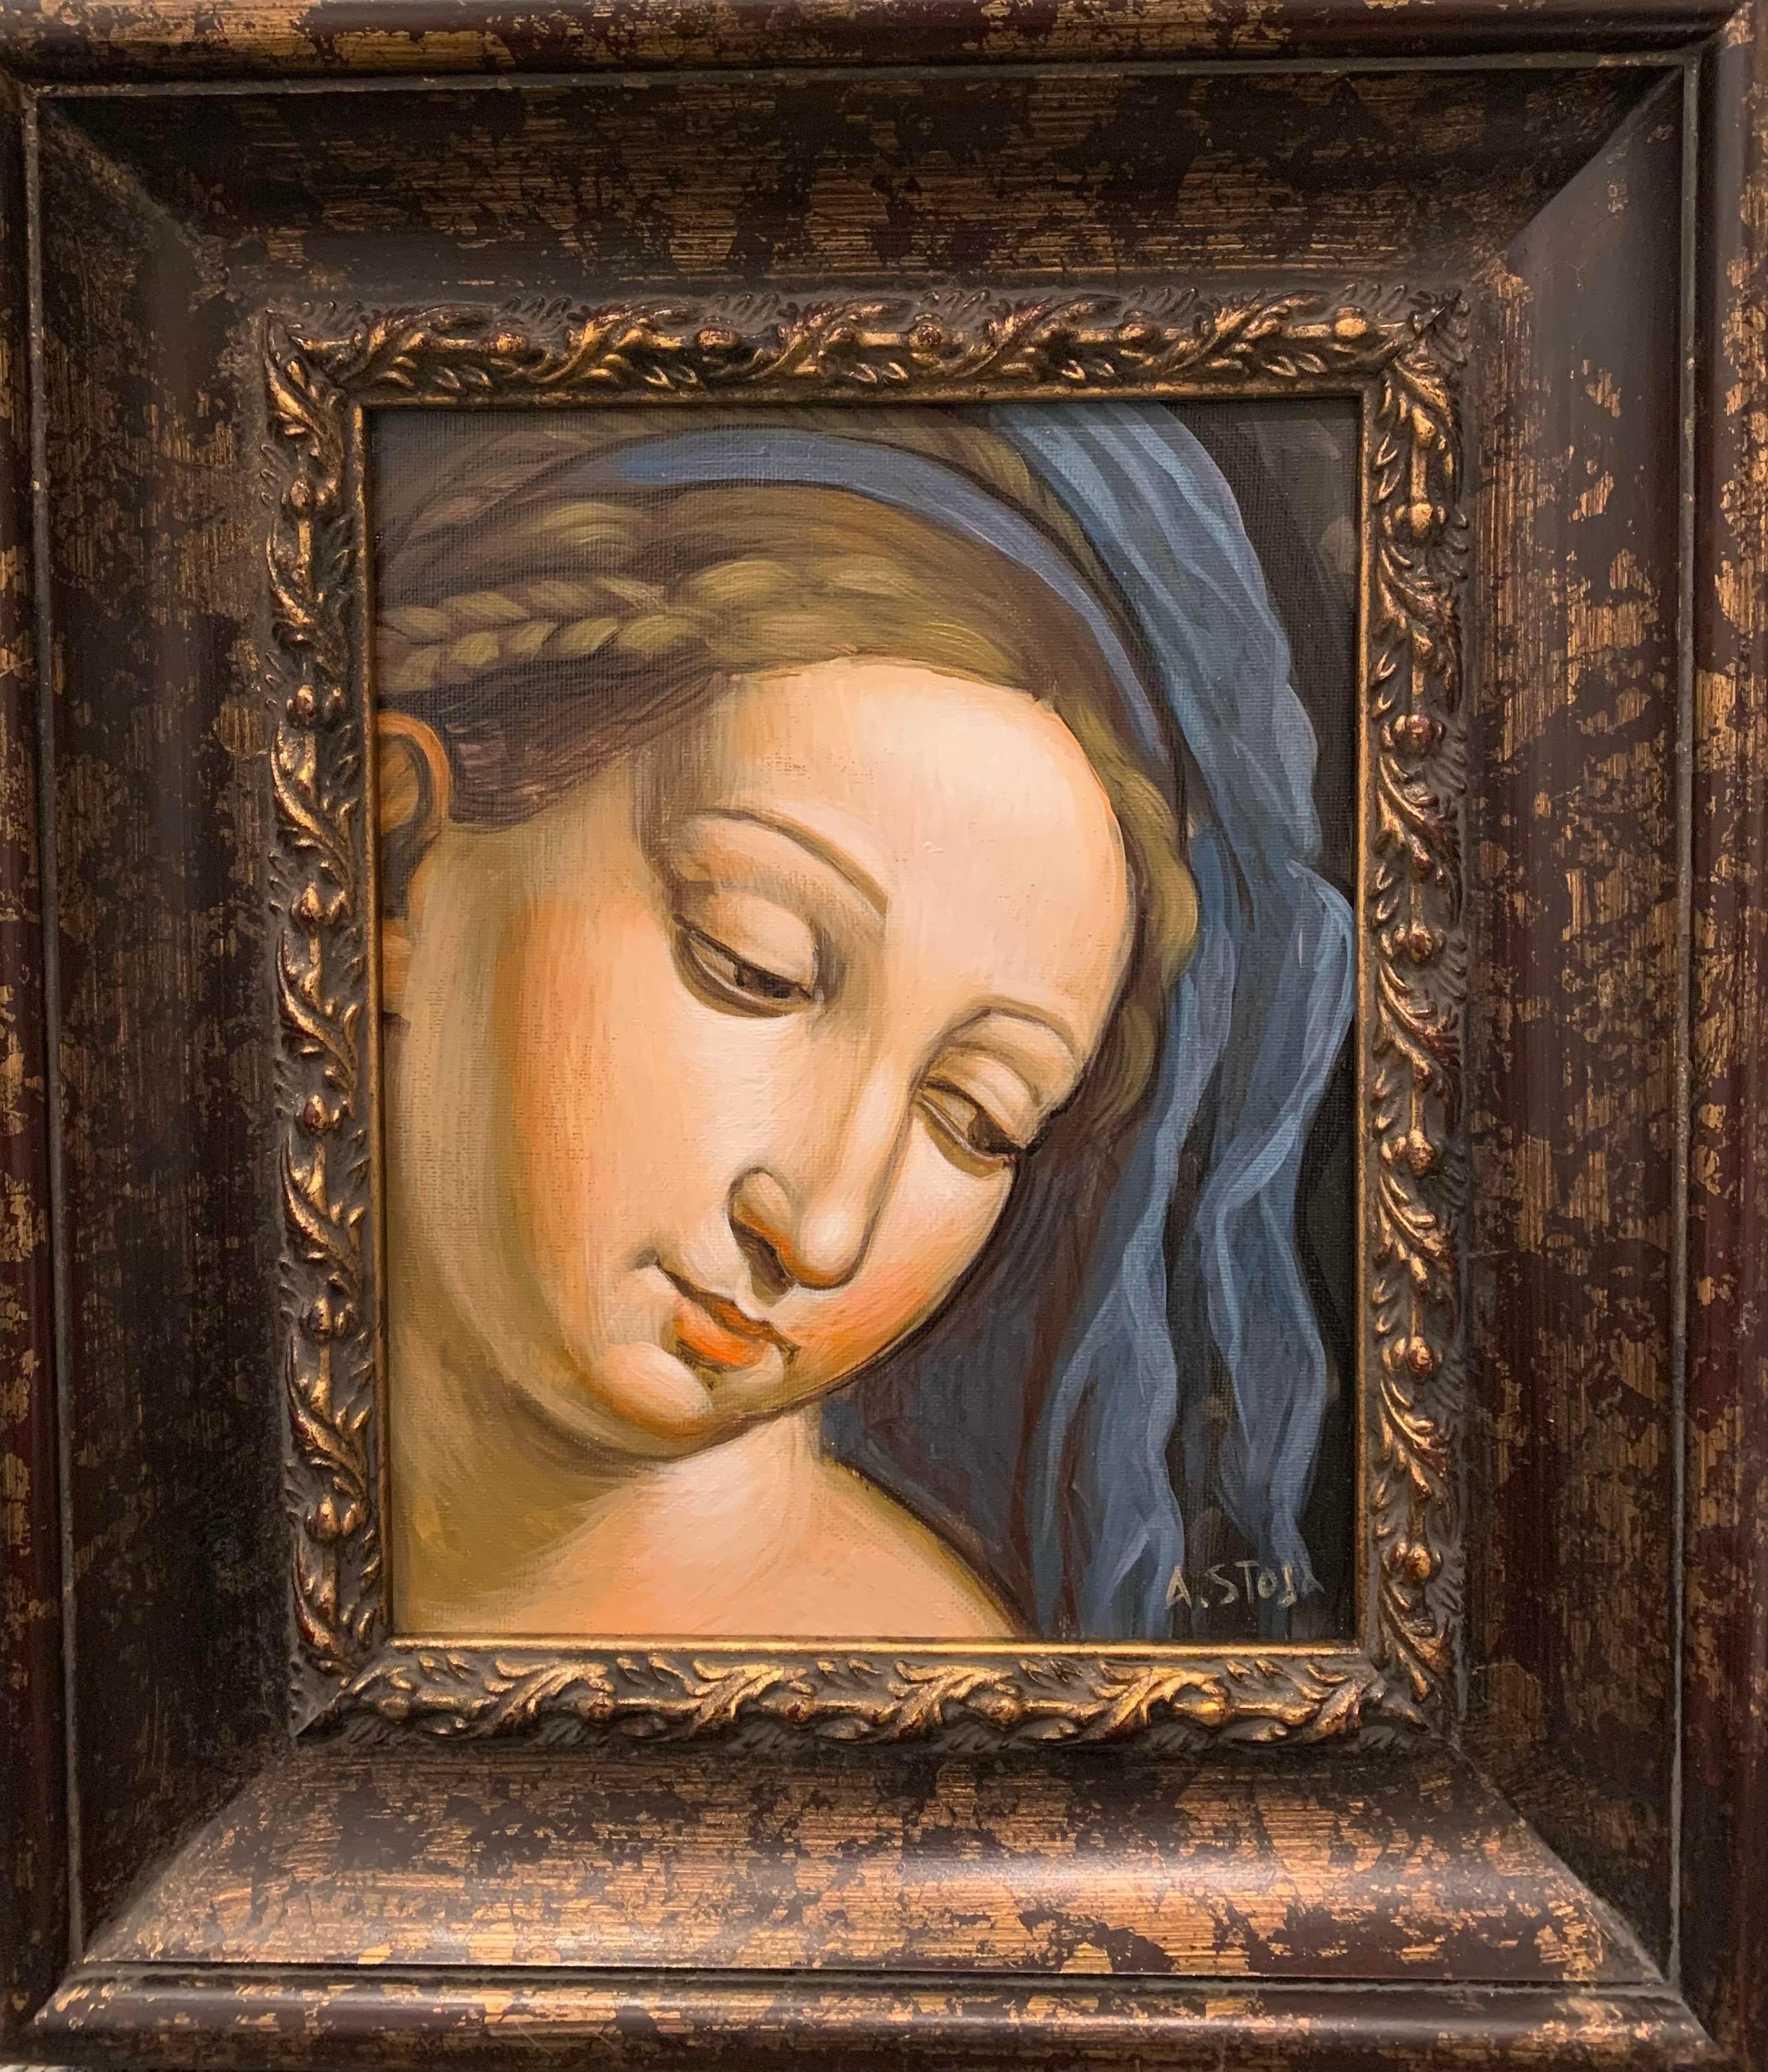 Altin Stoja Portrait Painting - Acrylic on Canvas -- Madonna from Italian Renaissance